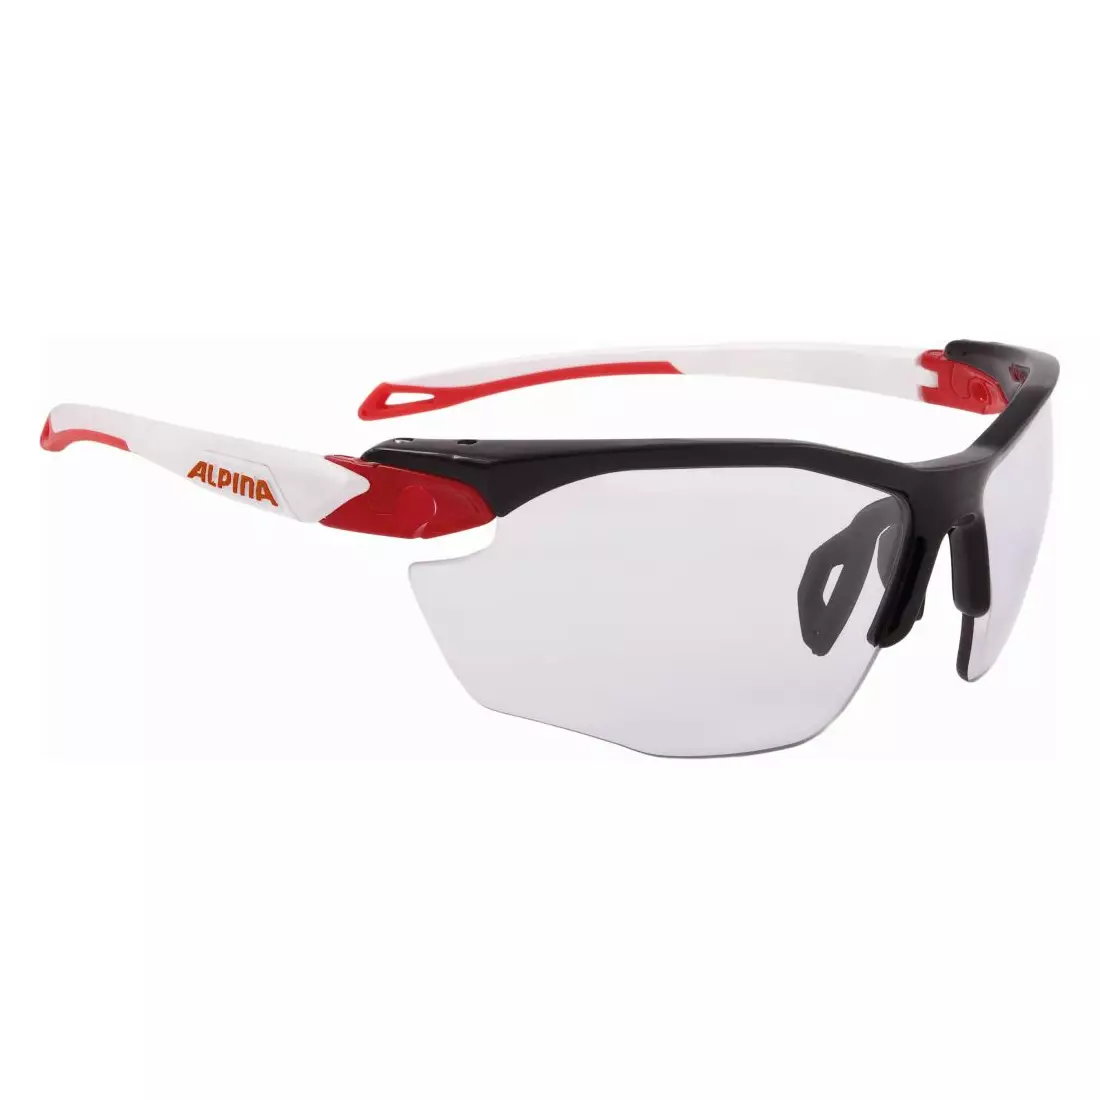 ALPINA sportkerékpáros szemüveg, fotokróm S1-S3-tól, fogstop TWIST FIVE HR VL+